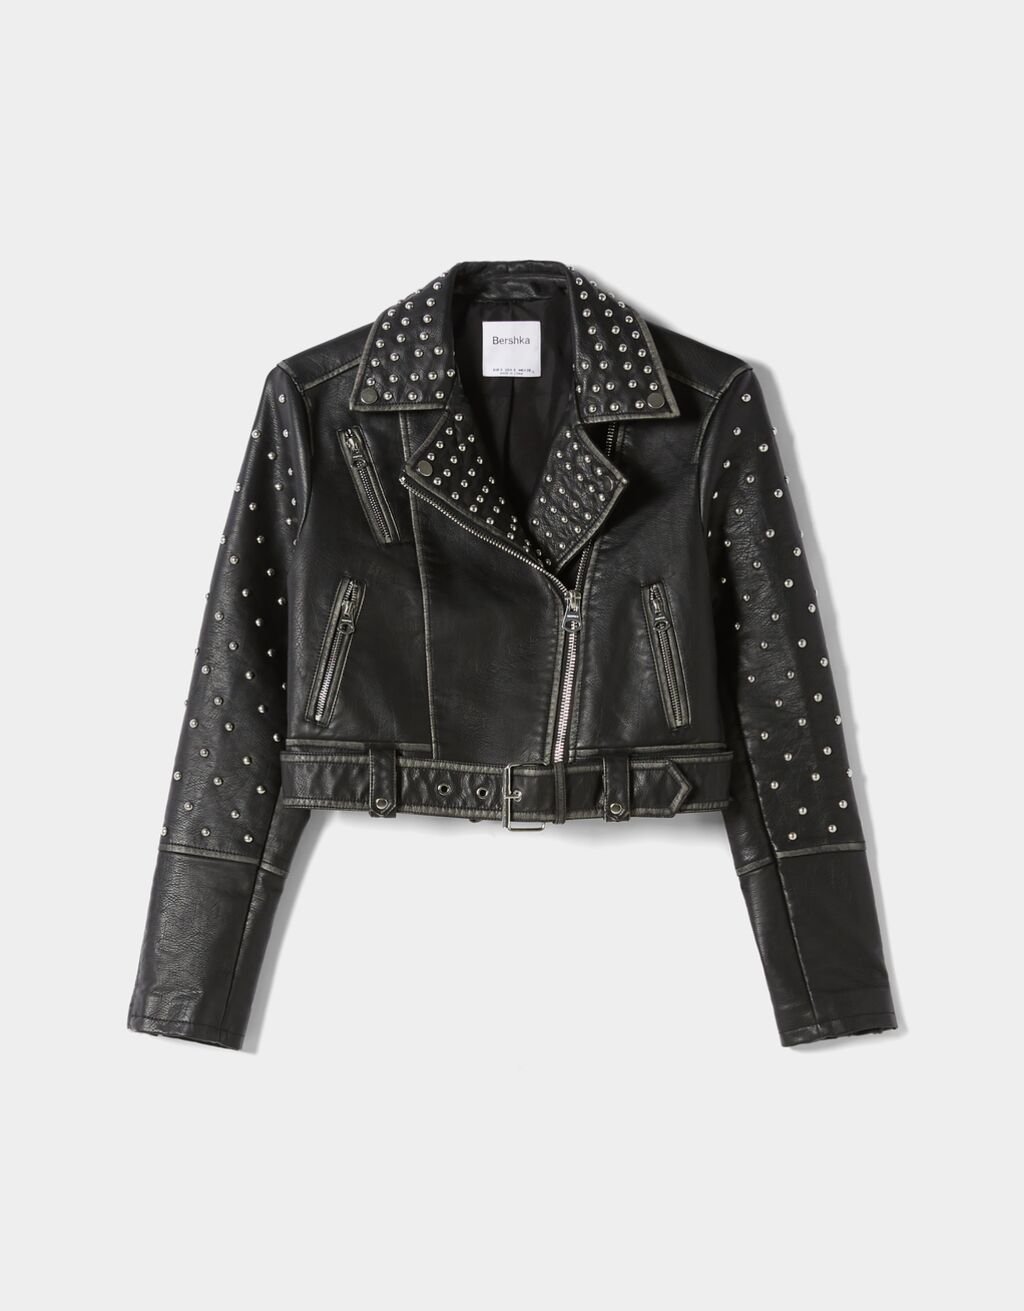 Studded leather effect biker jacket.